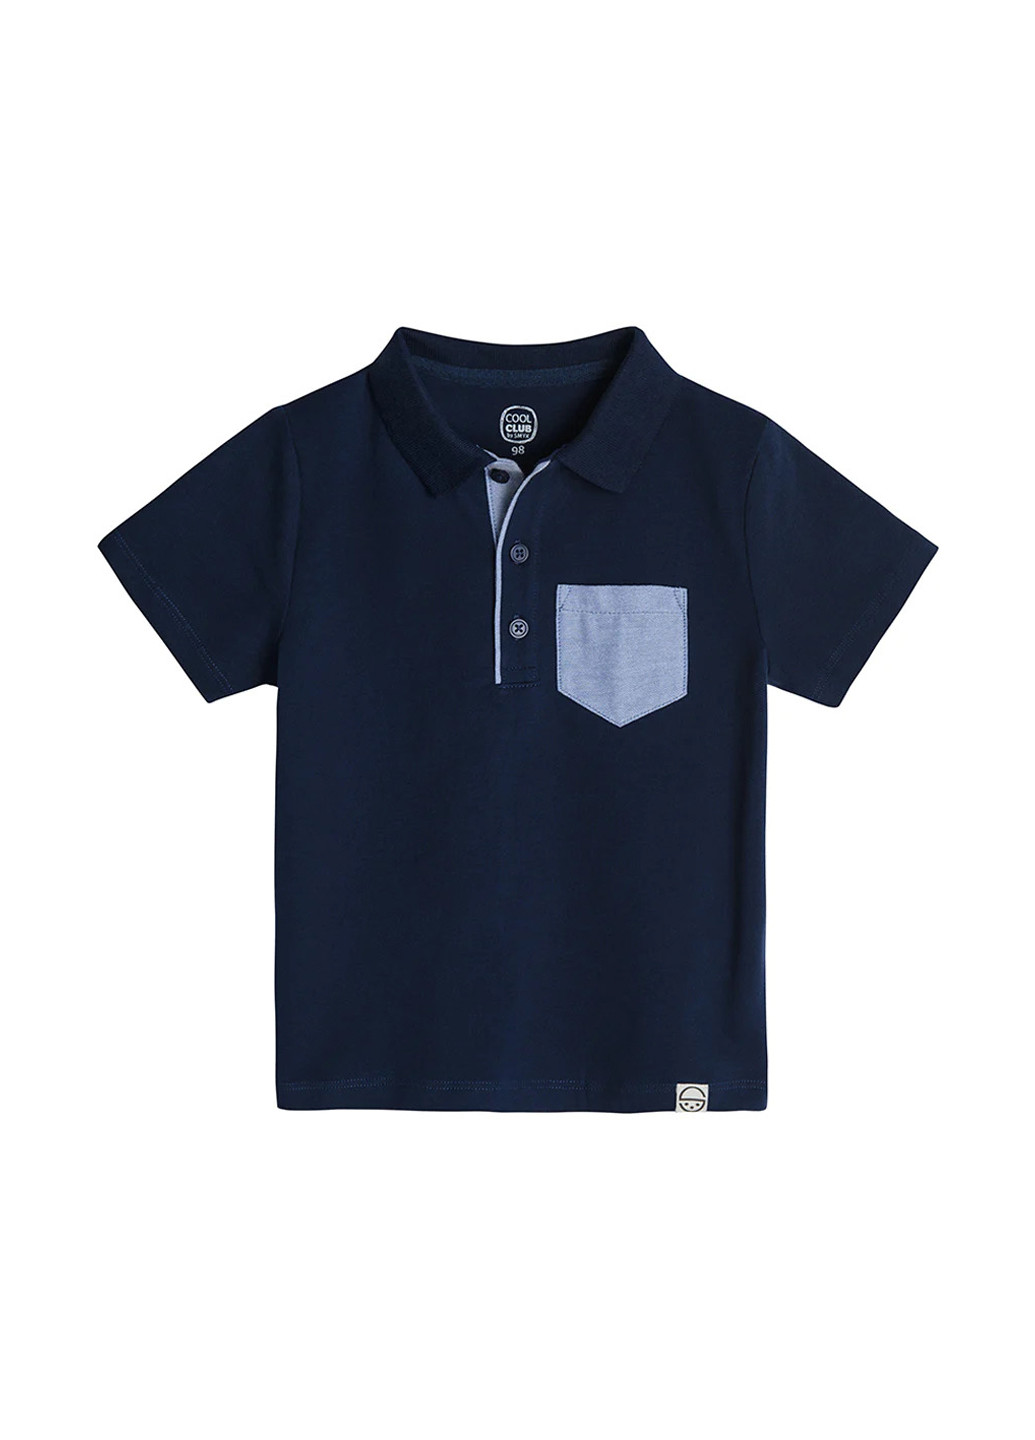 Темно-синяя детская футболка-футболка для мальчика Cool Club однотонная